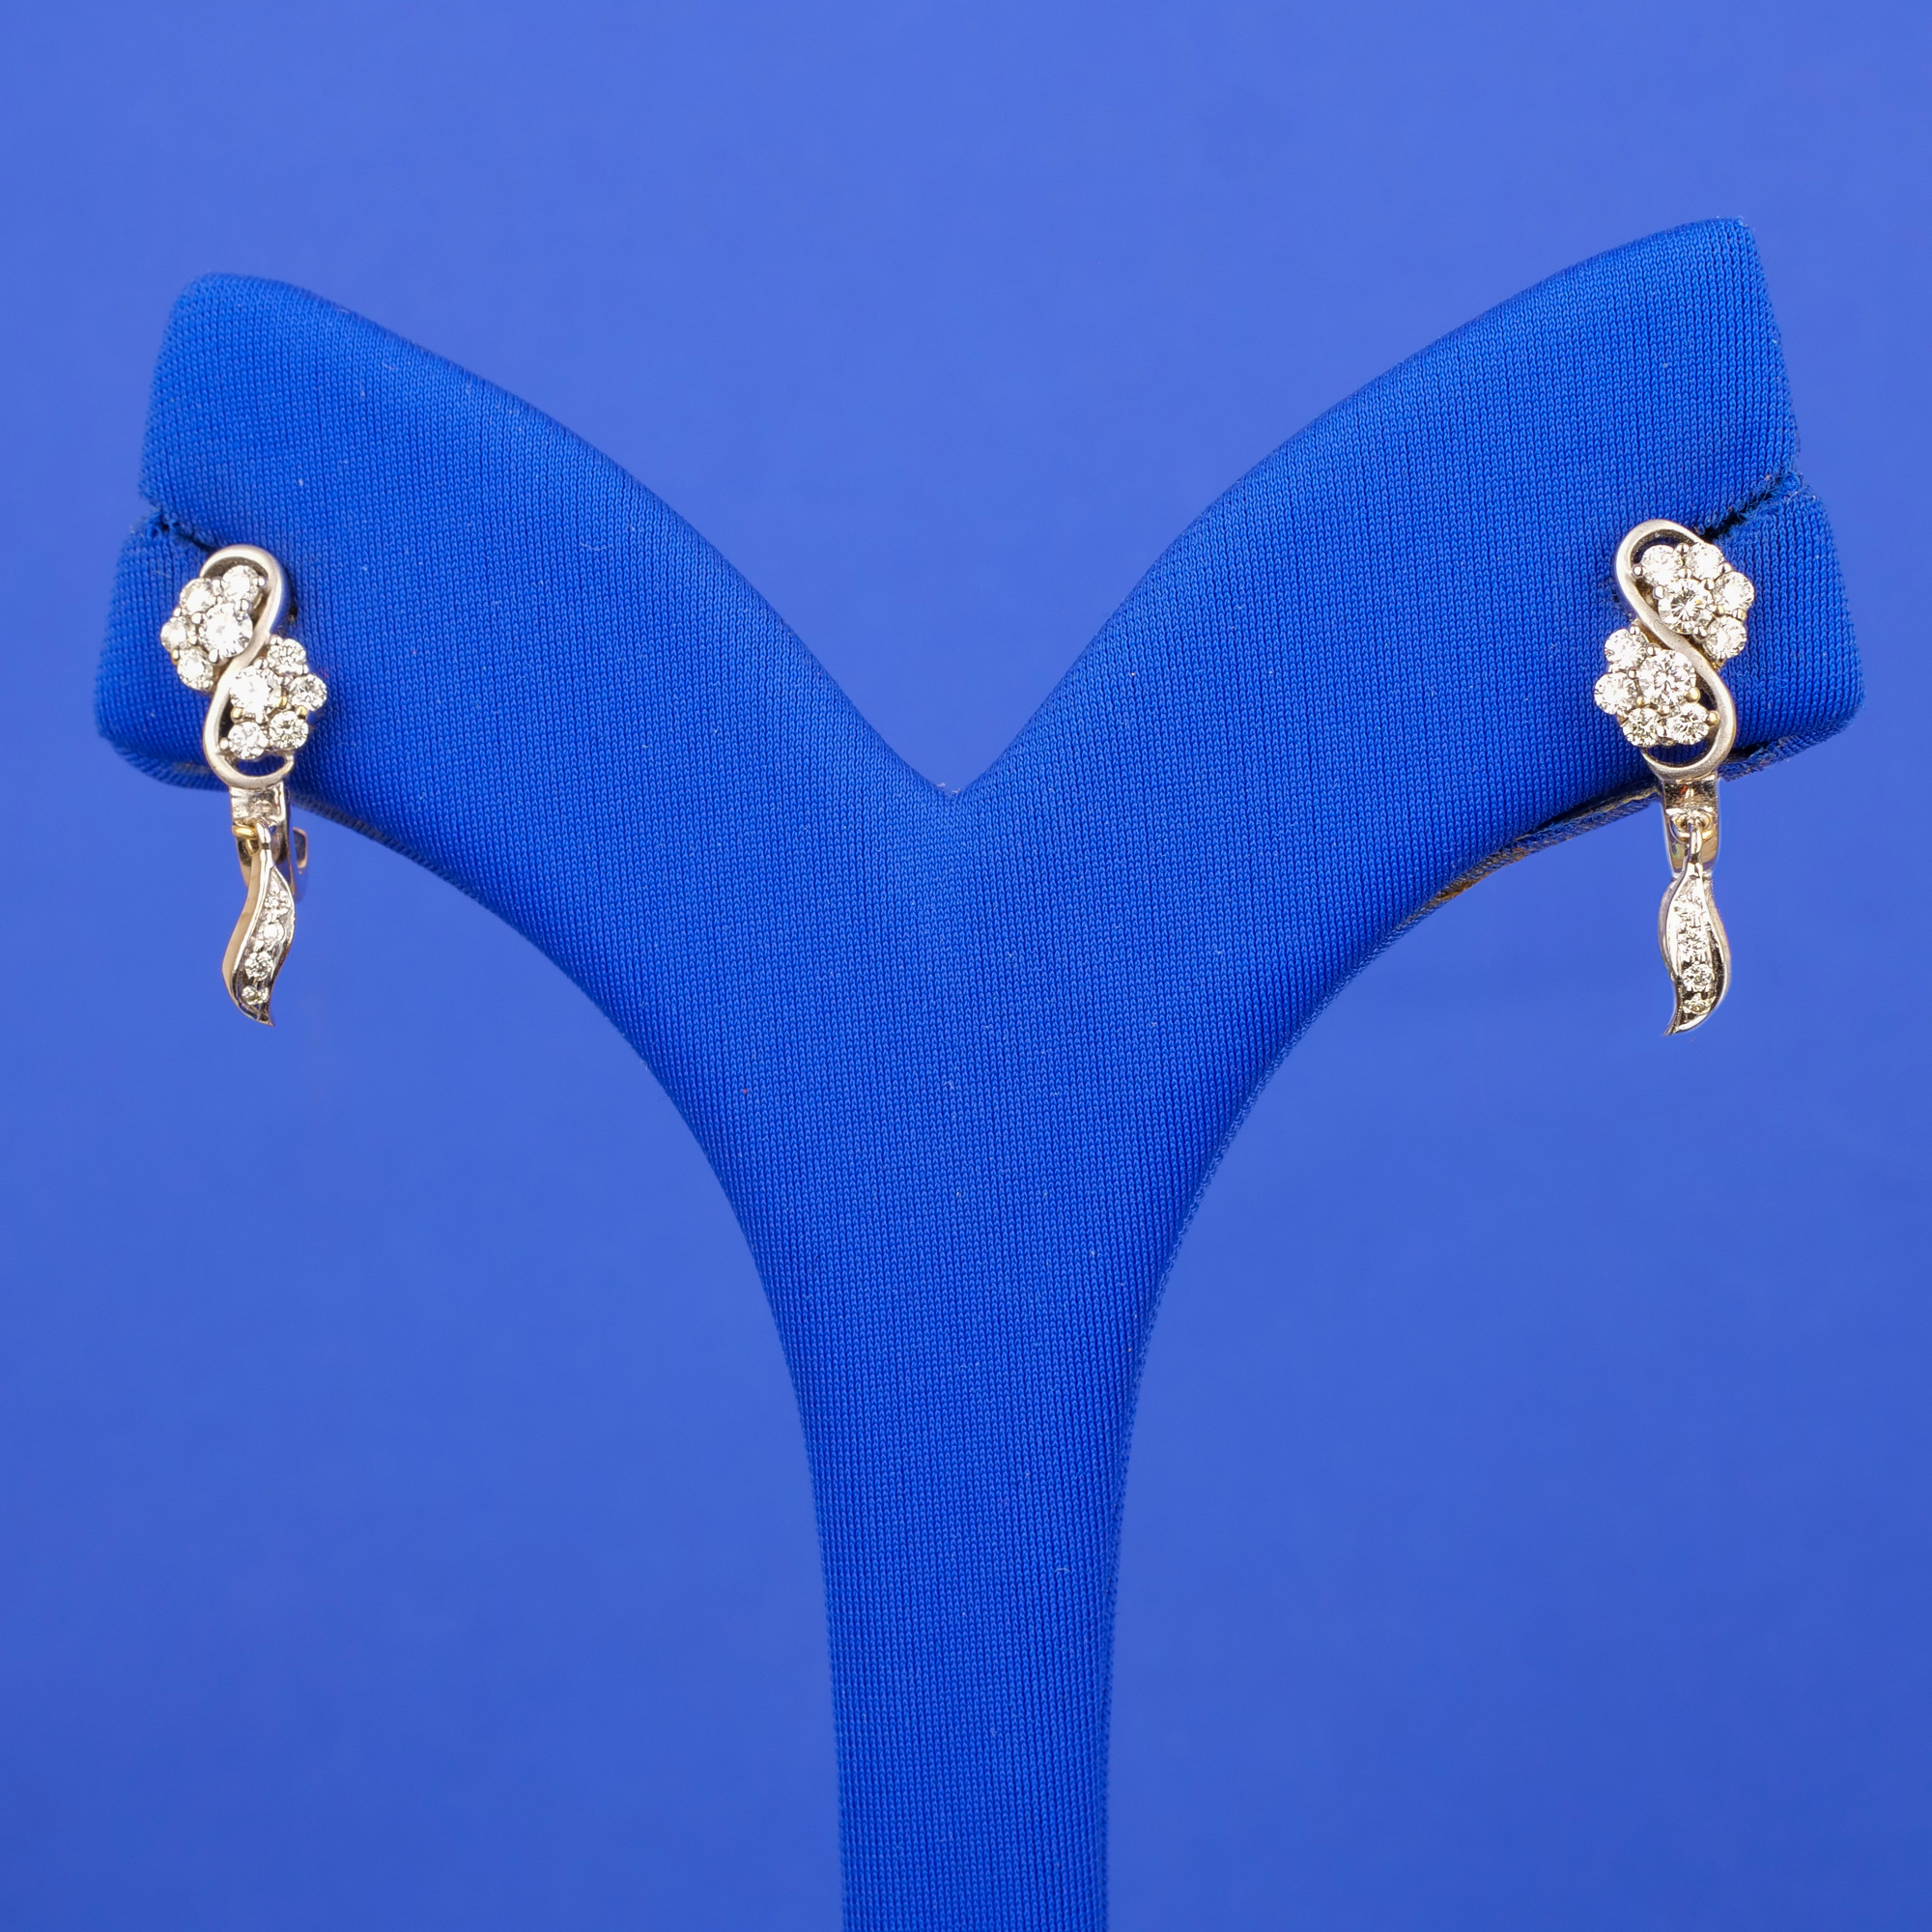 Handmade 18k White Gold Diamond Earrings